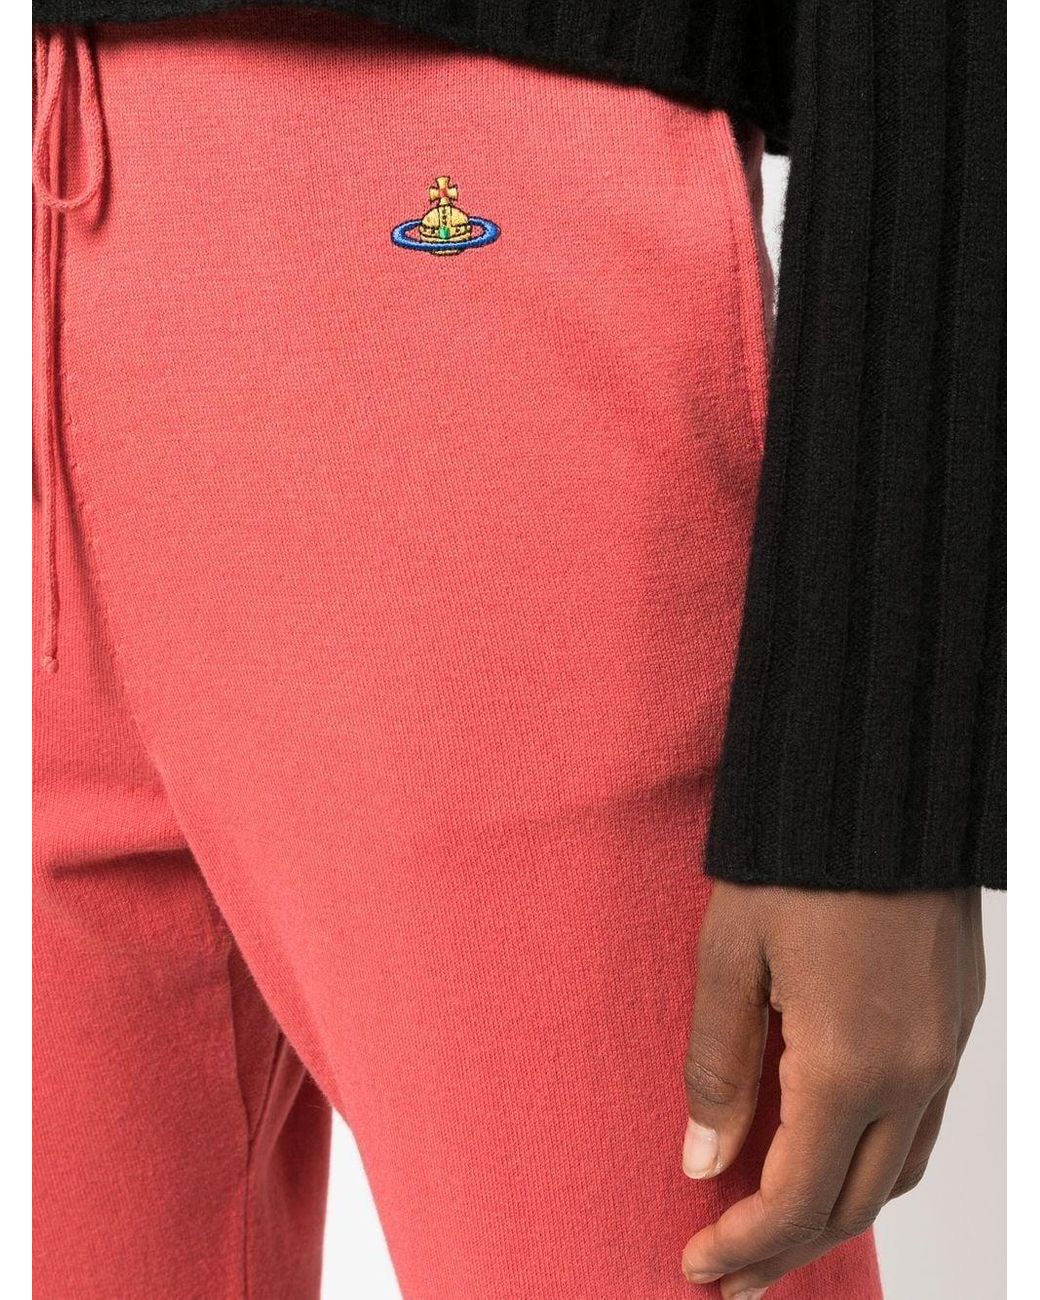 Pantalon de jogging à logo Orb brodé Coton Vivienne Westwood en coloris Rouge Femme Vêtements Articles de sport et dentraînement Pantalons de survêtement/sport 